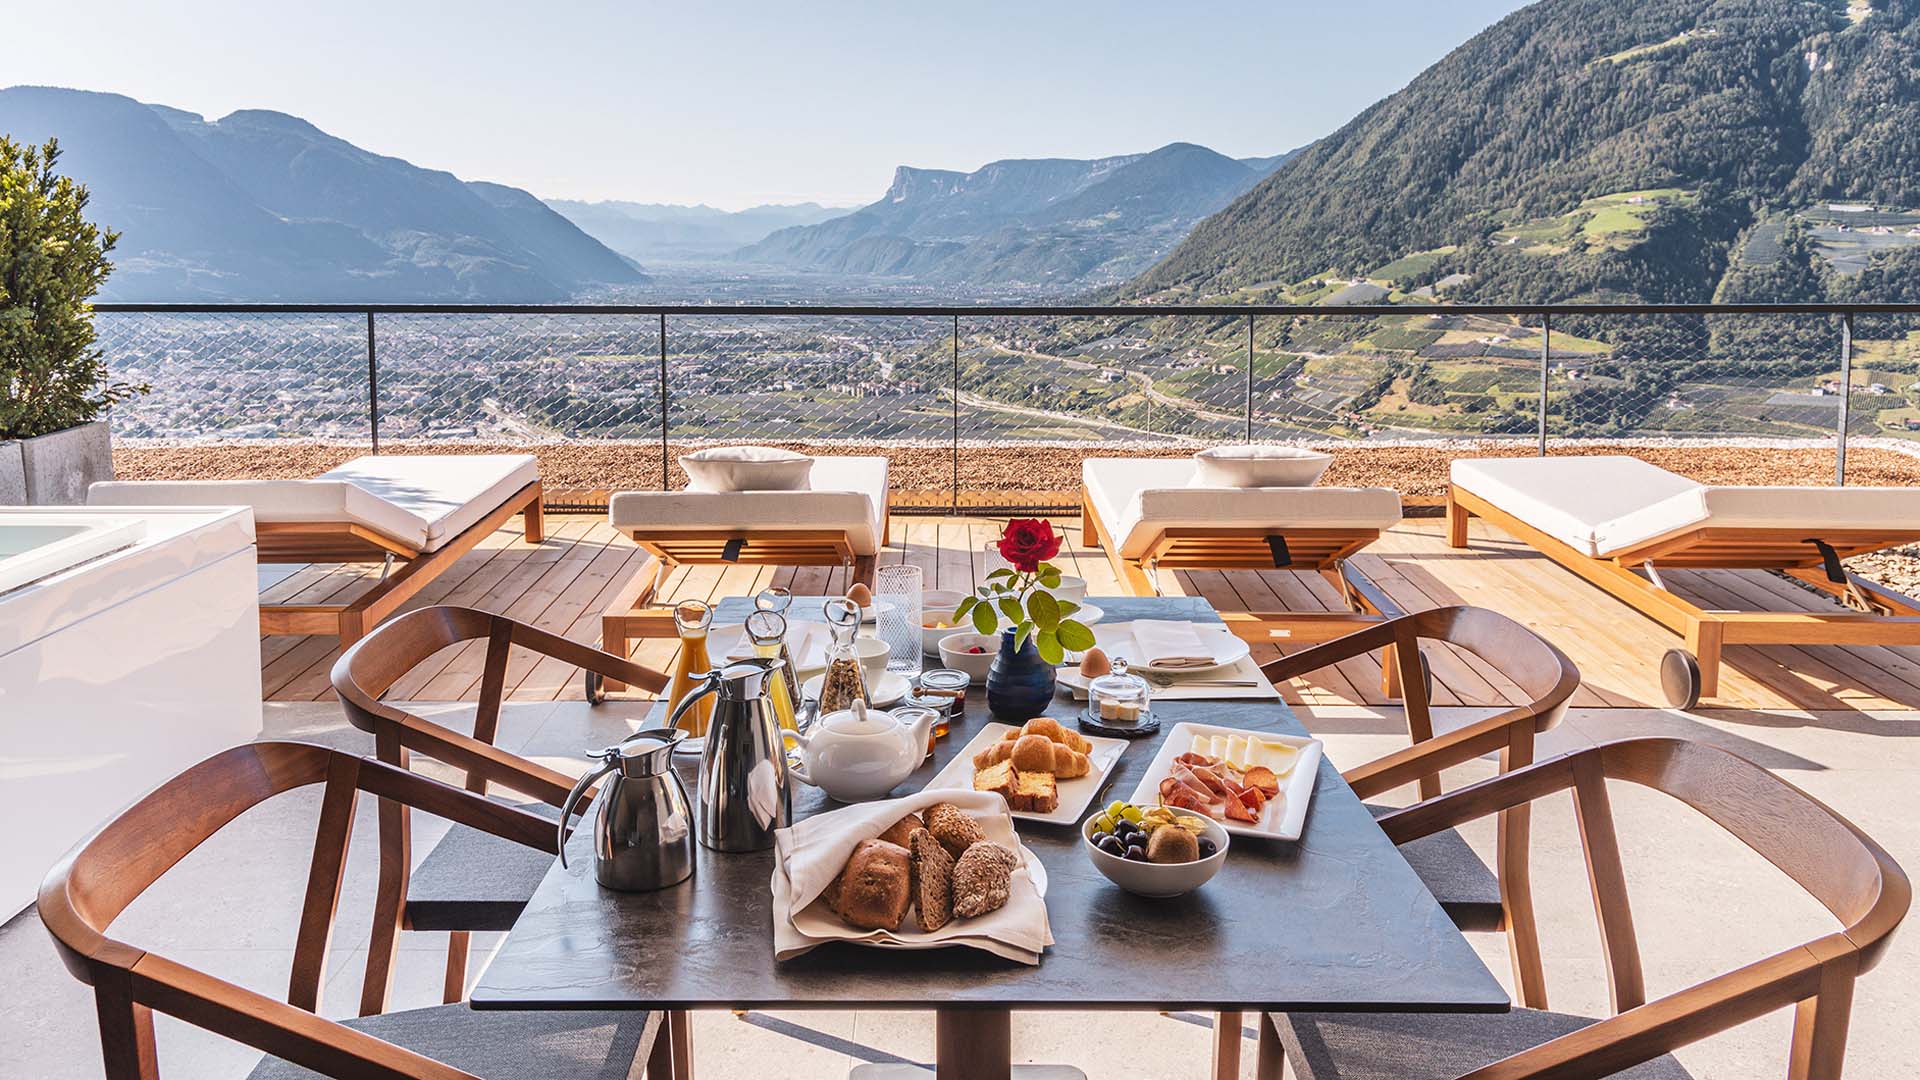 Gedeckter Frühstückstisch auf einer offenen Terrasse